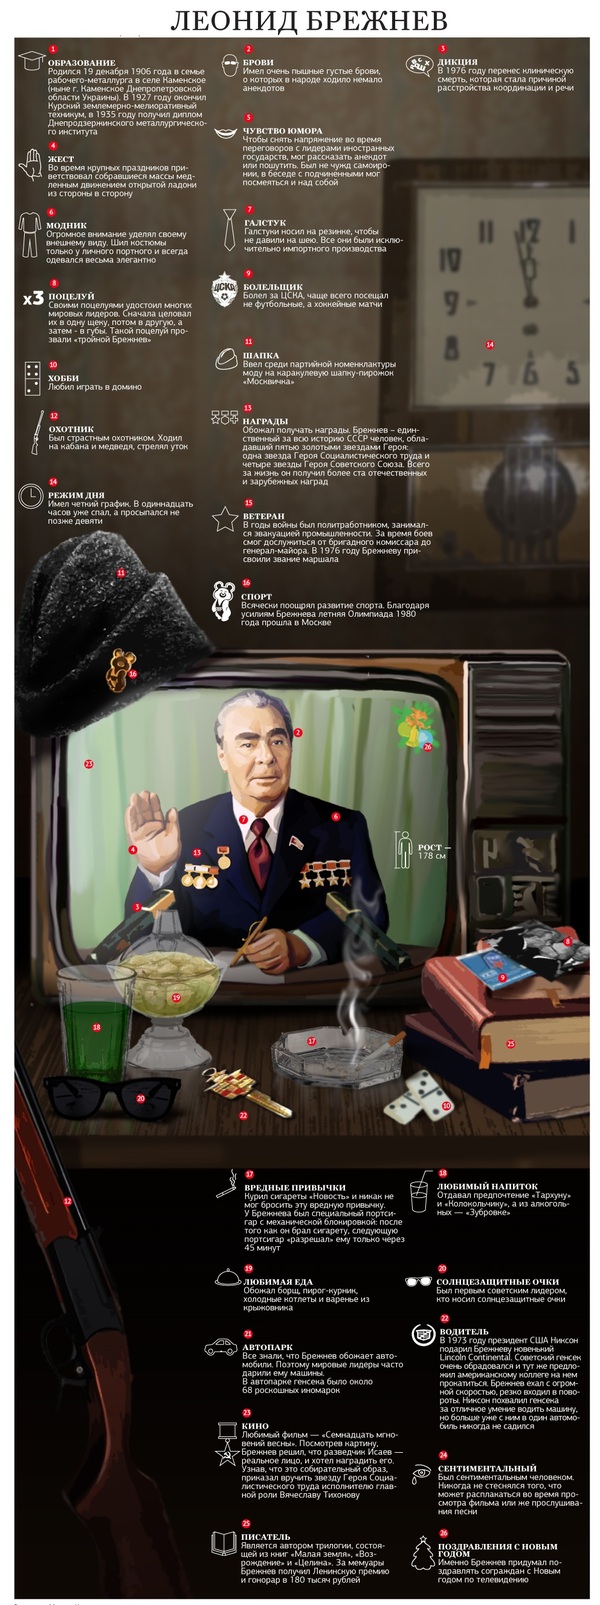 Leonid Brezhnev - Infographics, Brezhnev, the USSR, История России, Longpost, Leonid Brezhnev